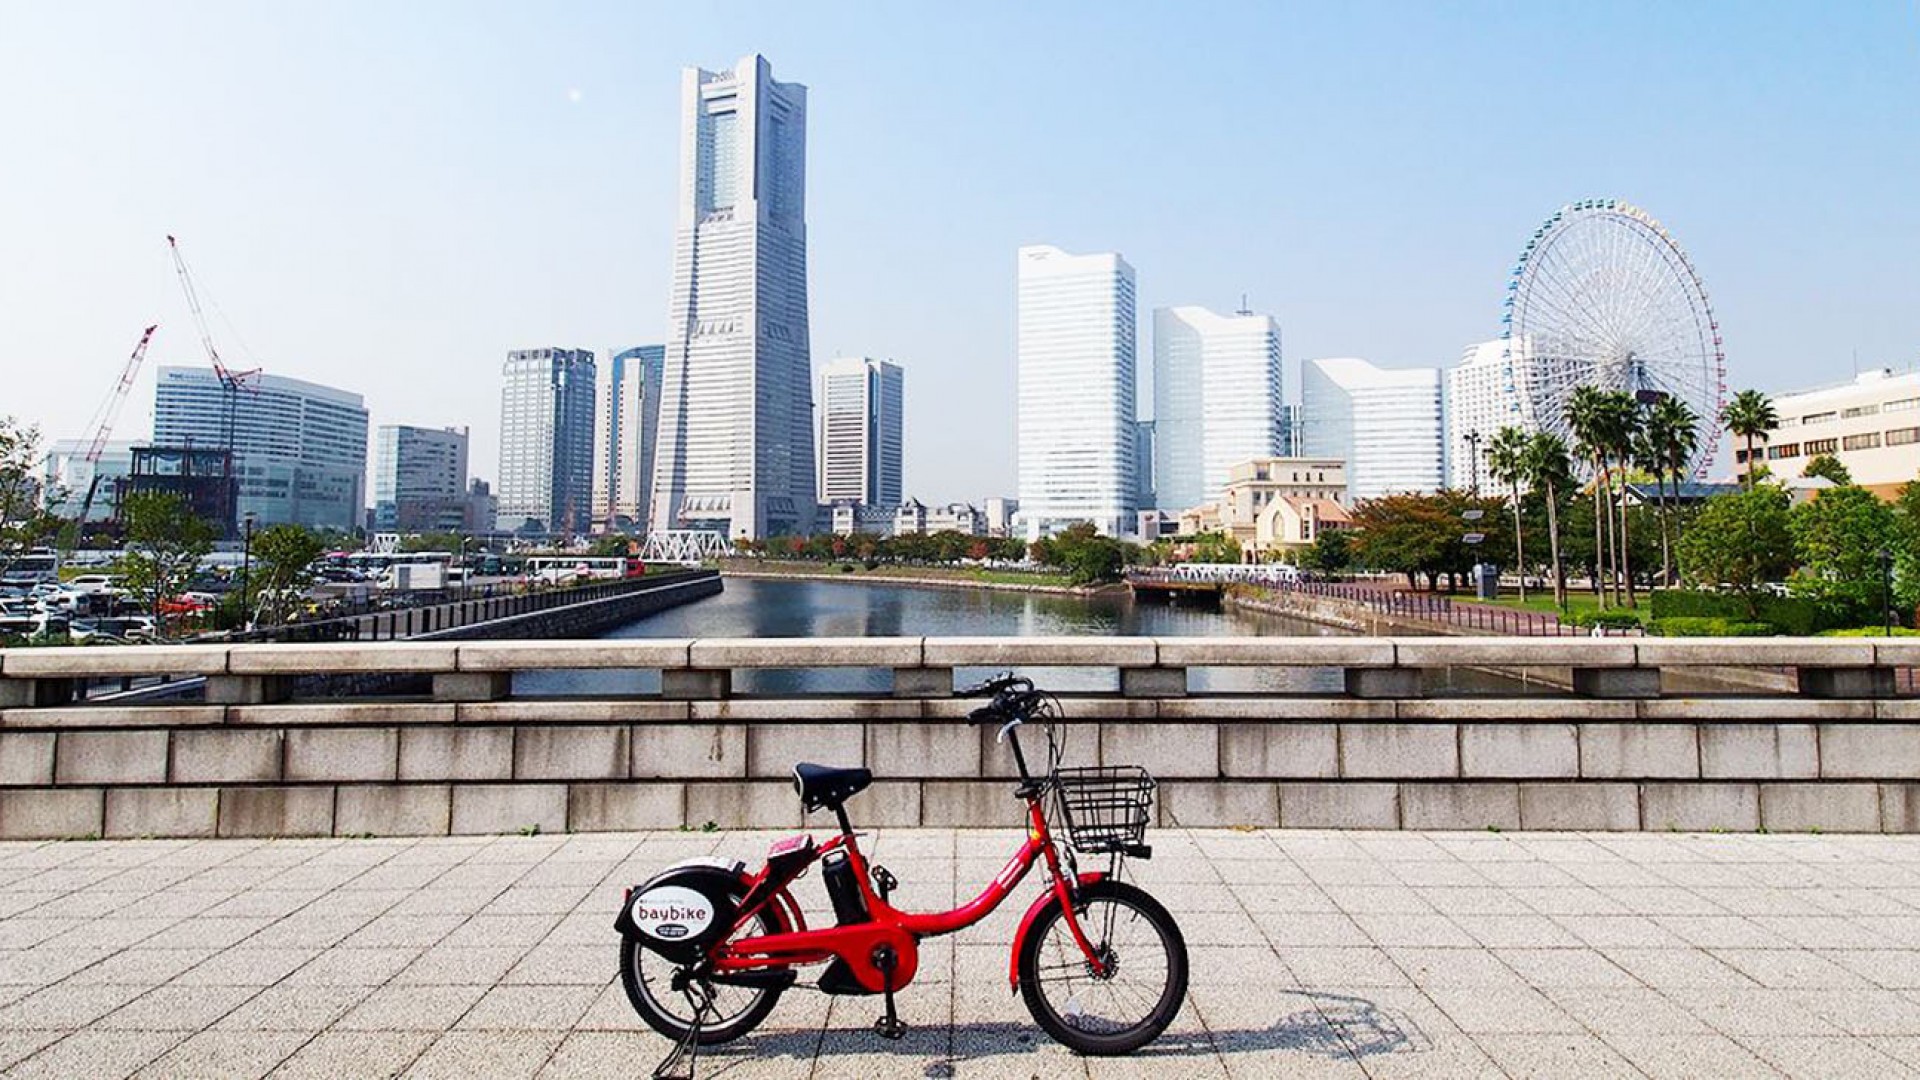 騎著Baybike 電動單車在橫濱市內觀光